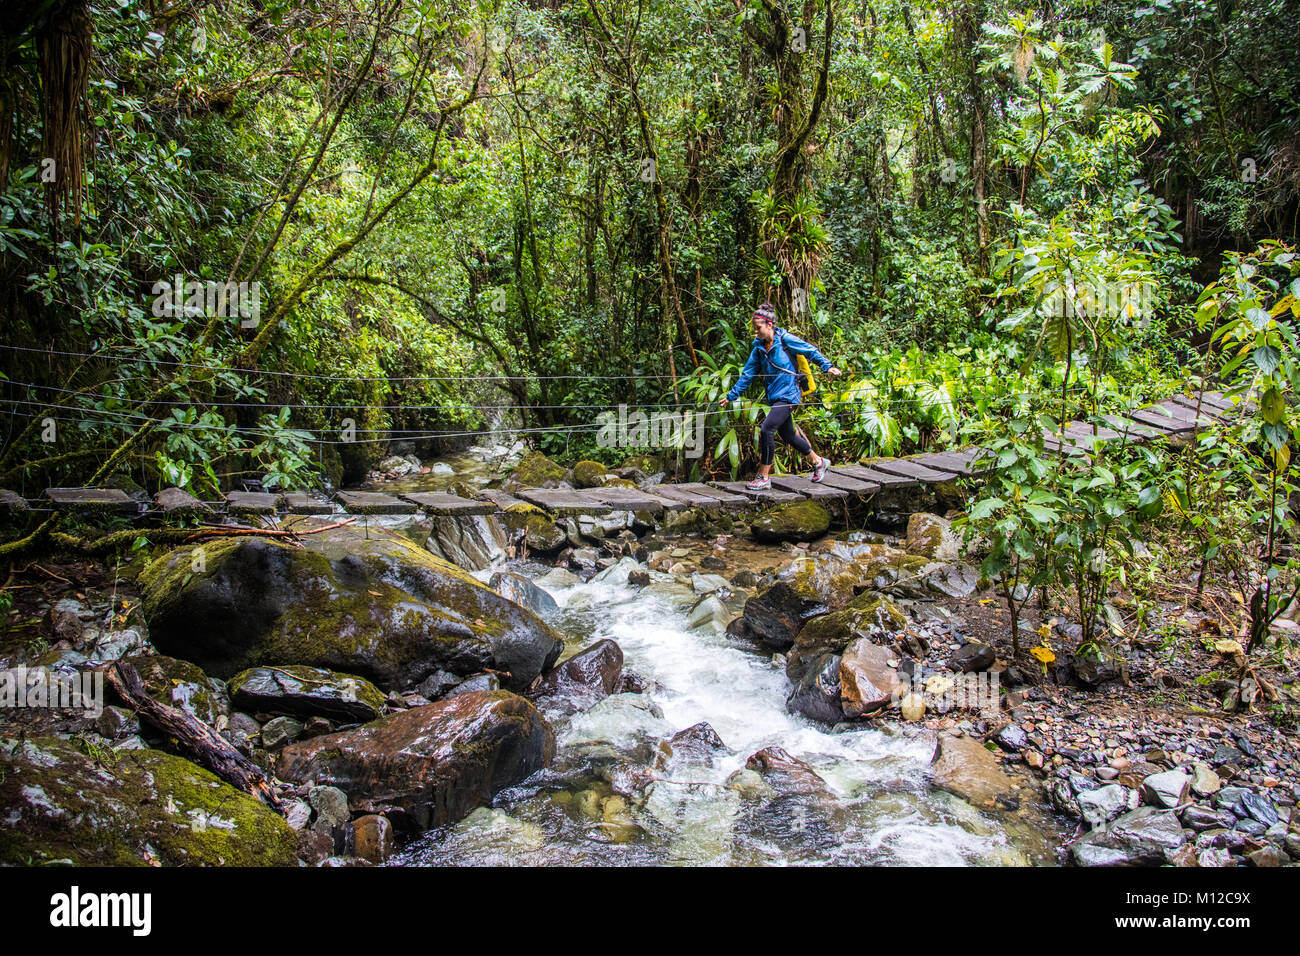 Valle de Cocora hiking trail, near Salento, Colombia, South America Stock Photo